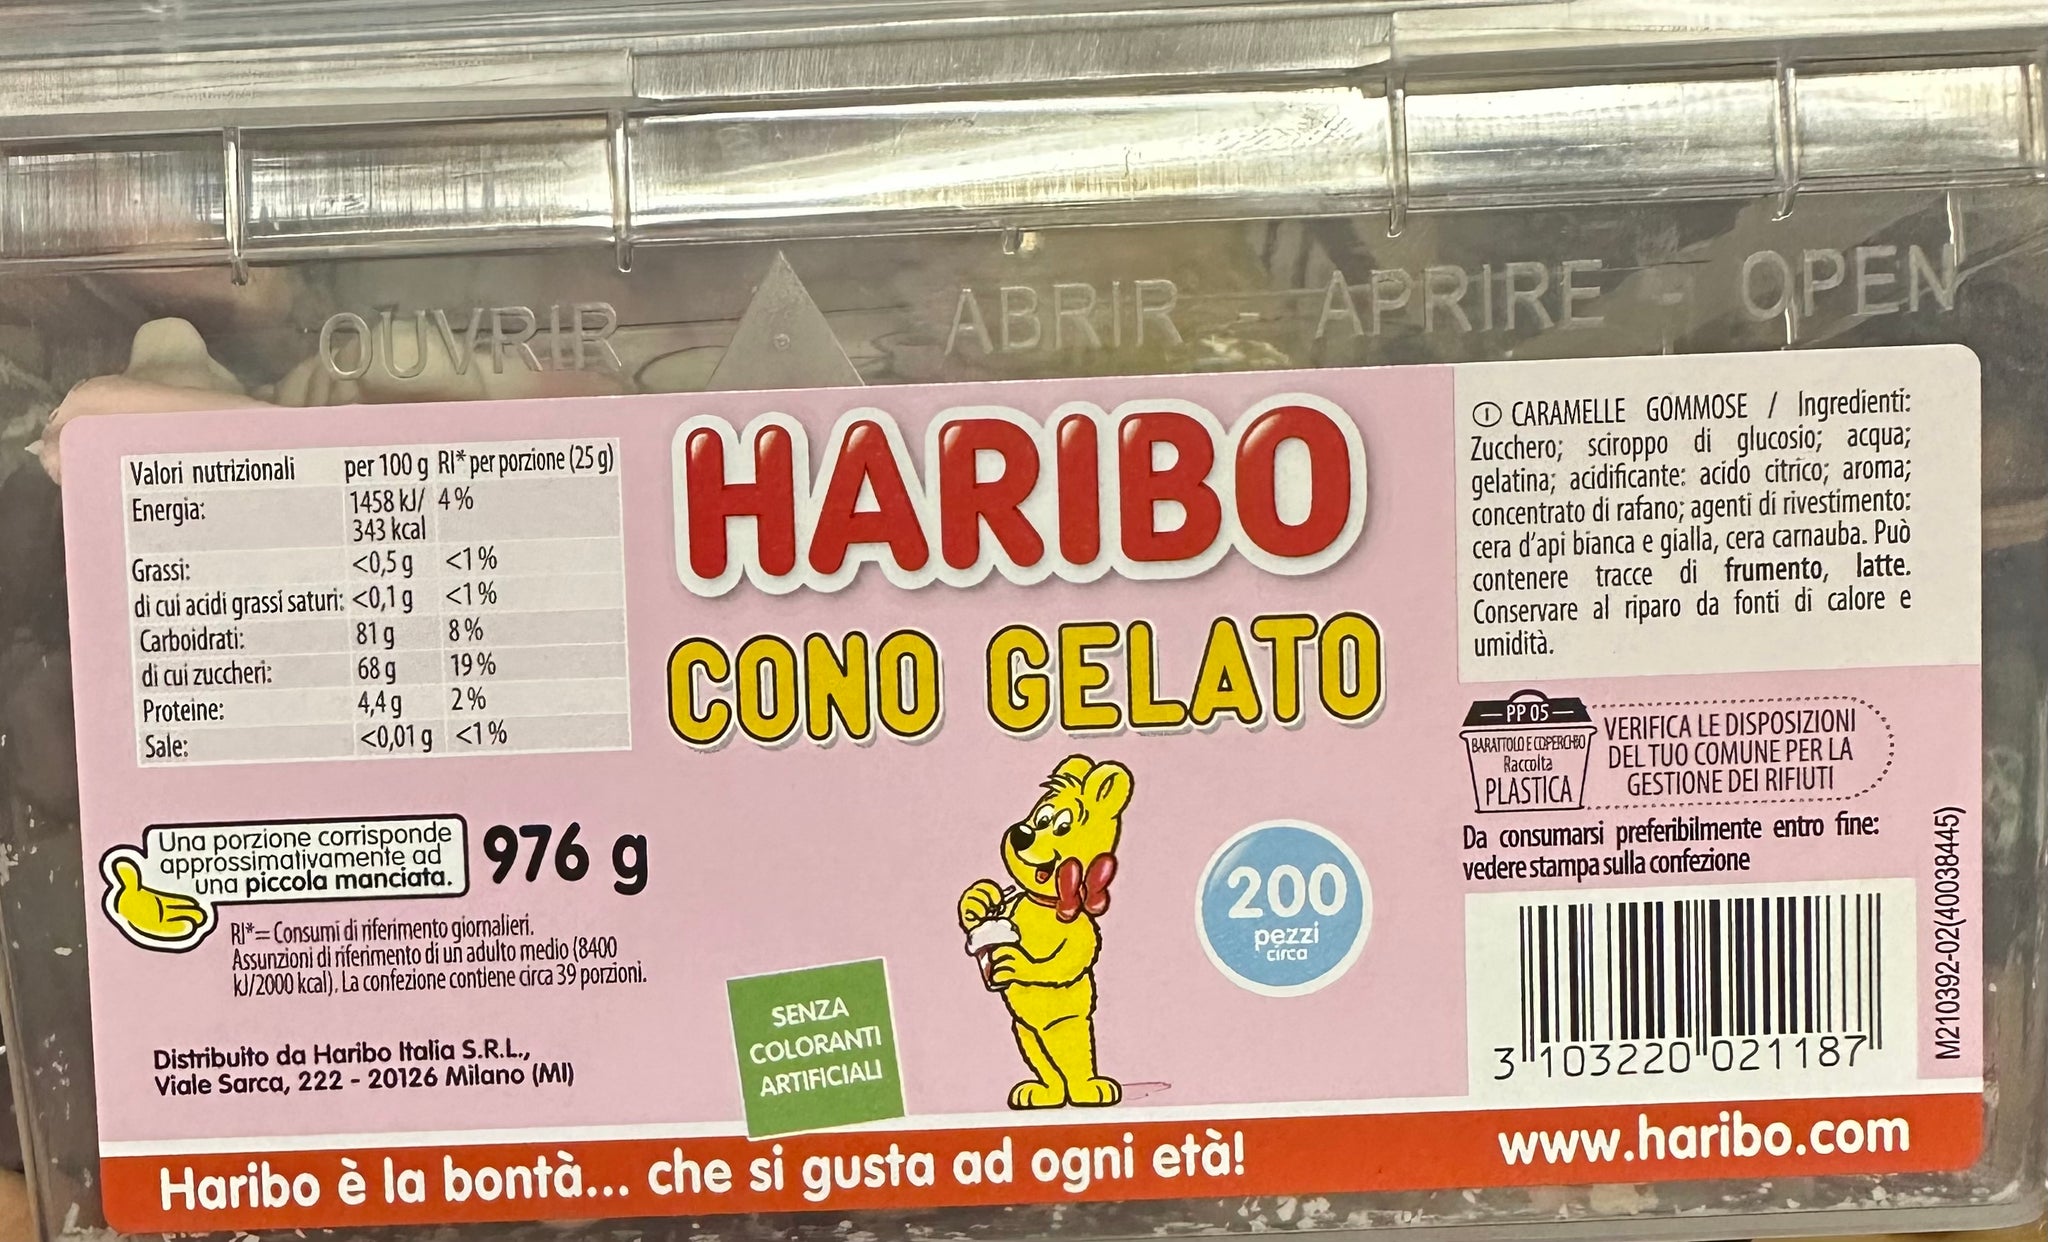 Caramelle Cono gelato Haribo